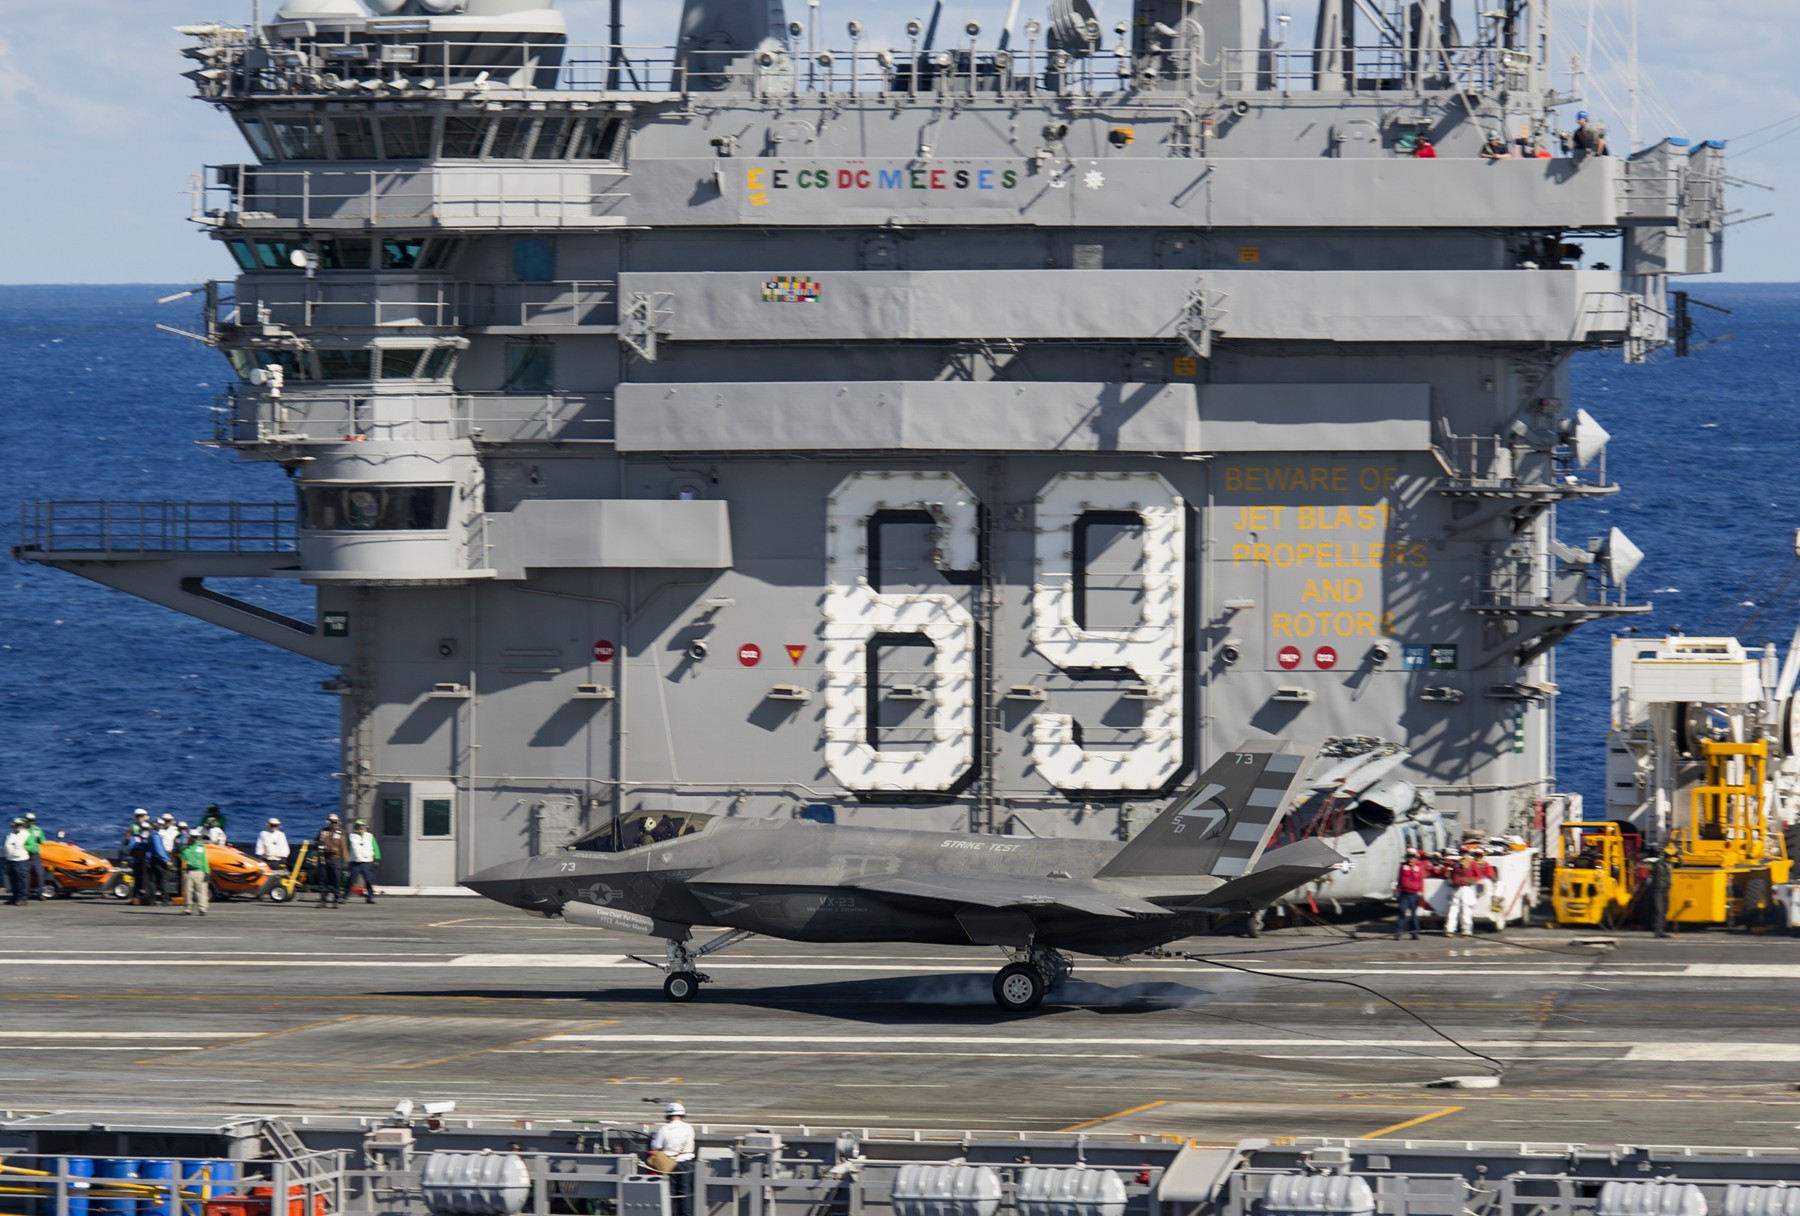 cvn-69 uss dwight d. eisenhower aircraft carrier us navy f-35c lightning ii tests 413